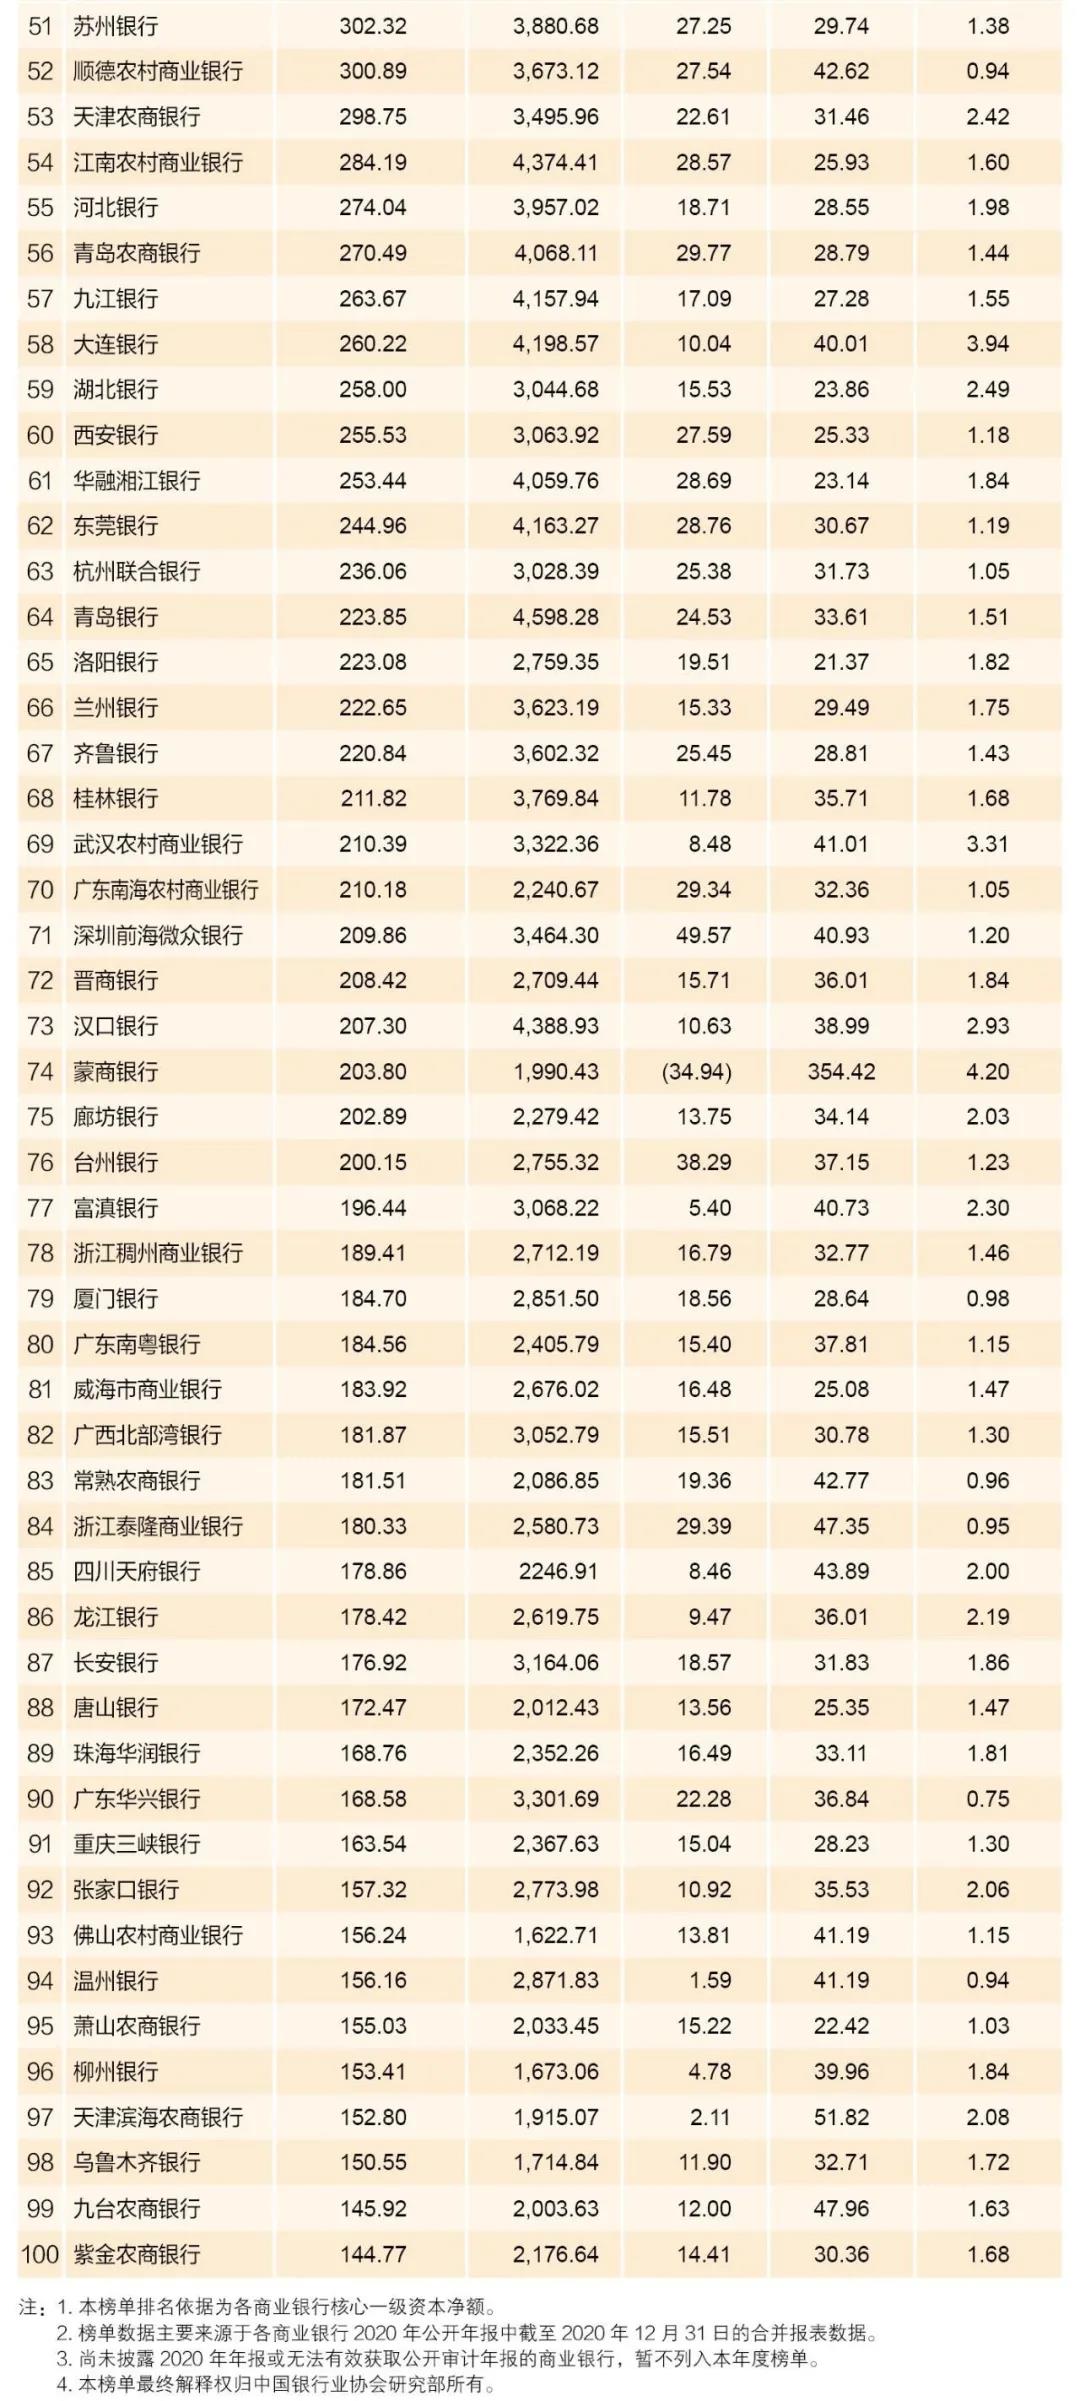 2021年中国银行业100强榜单